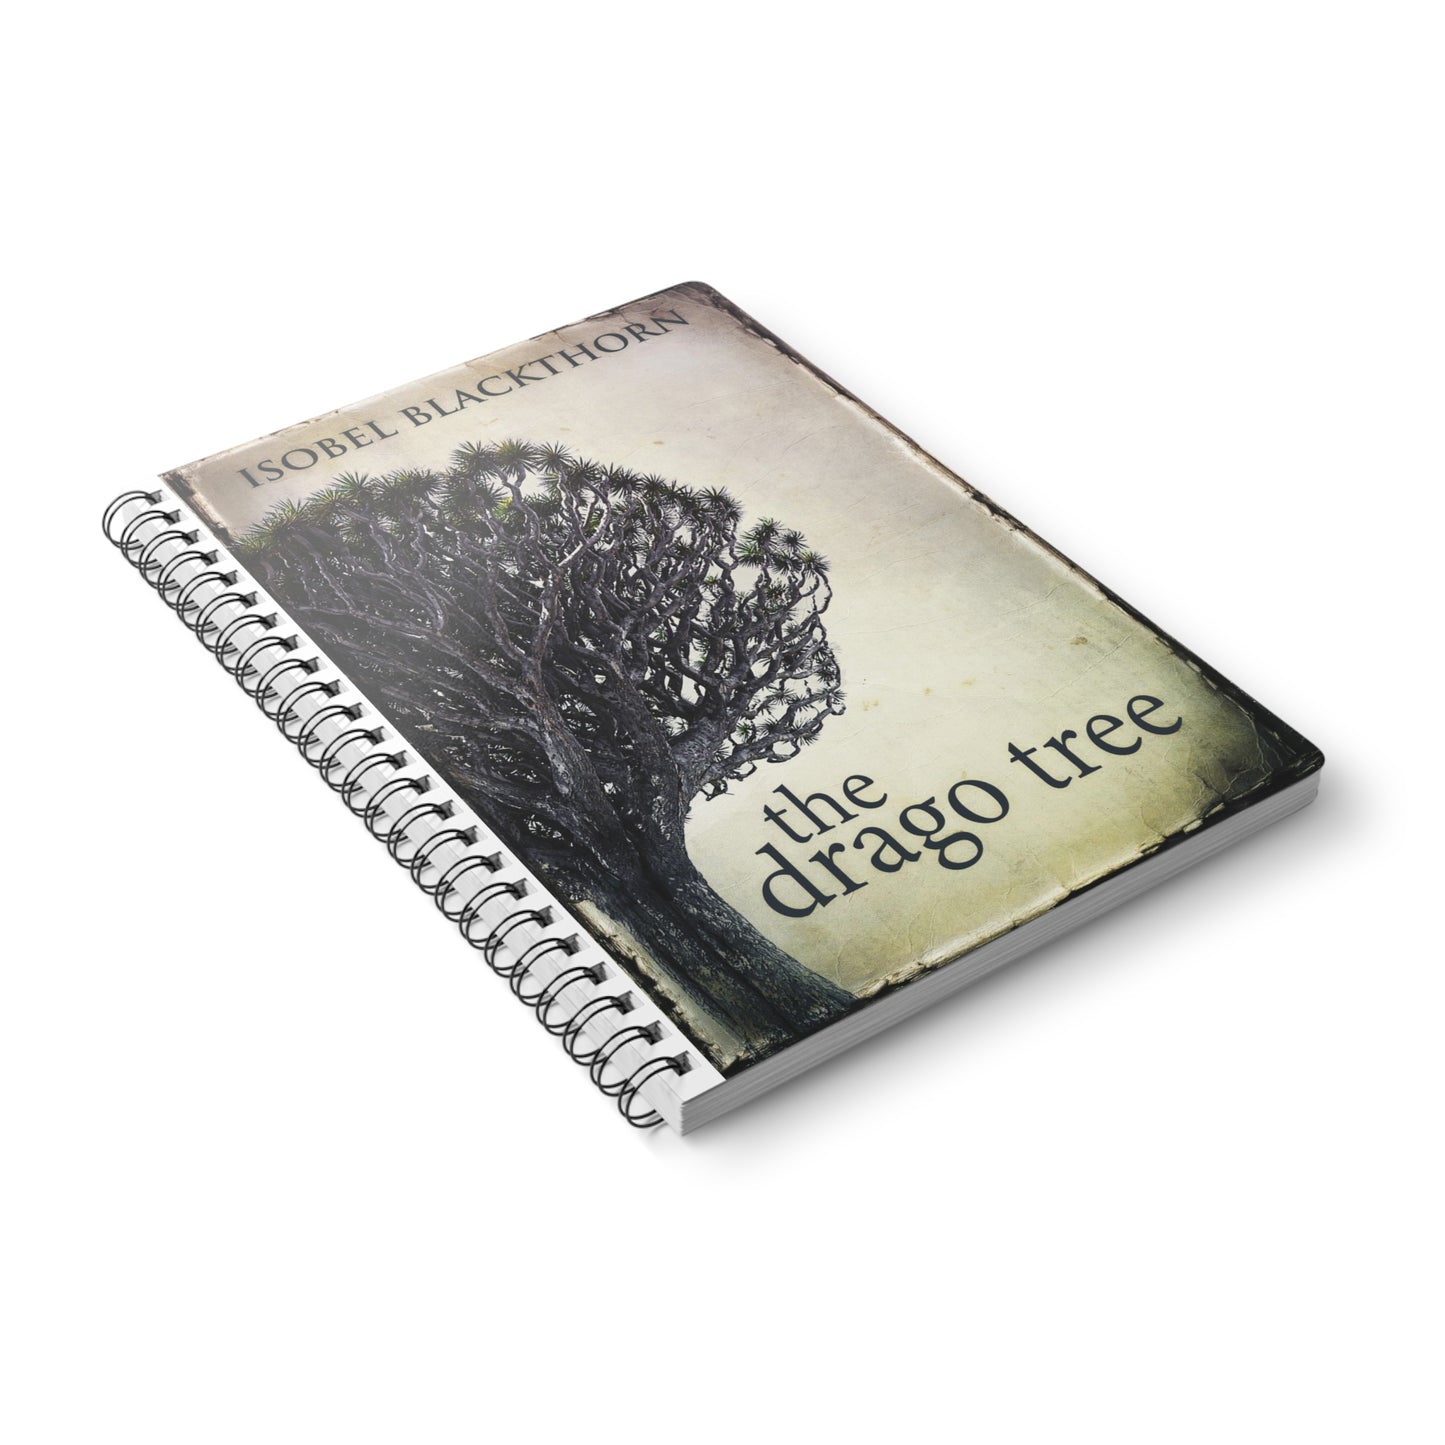 The Drago Tree - A5 Wirebound Notebook